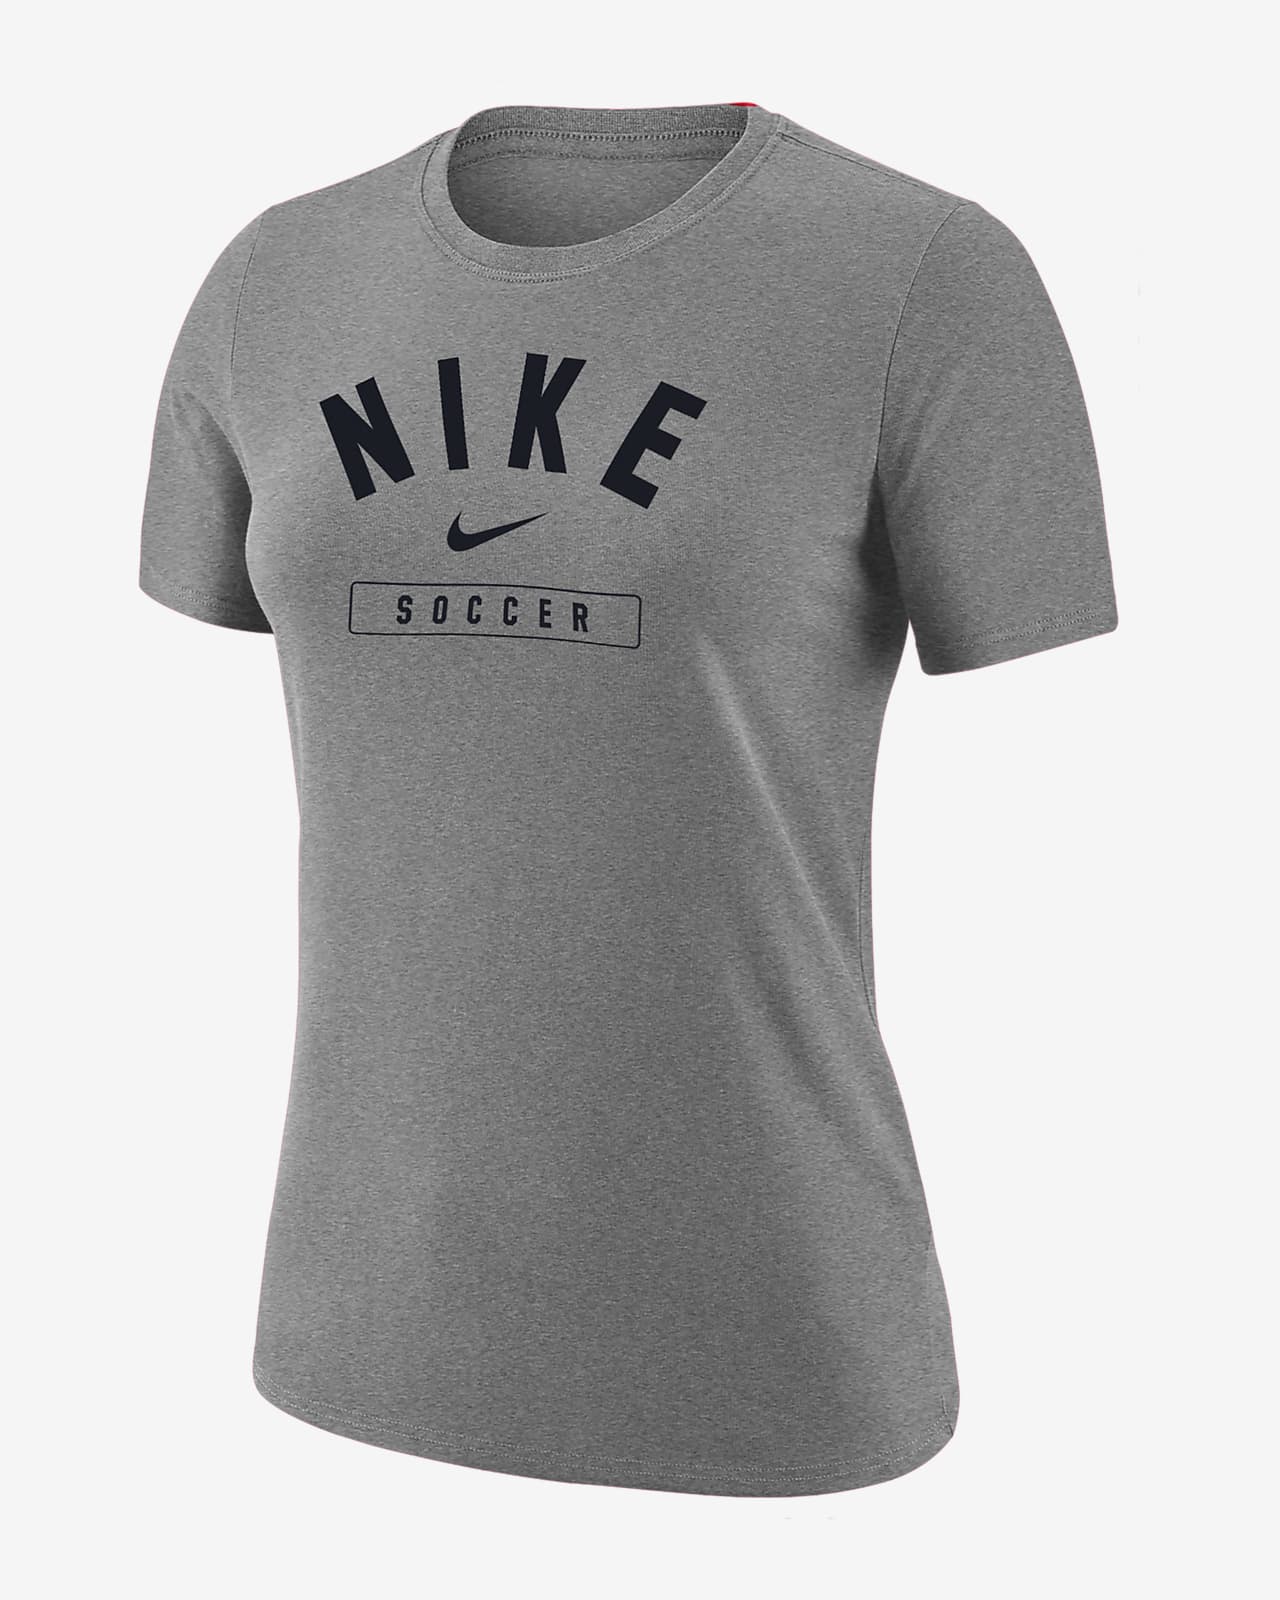 Nike Swoosh Women's Soccer T-Shirt